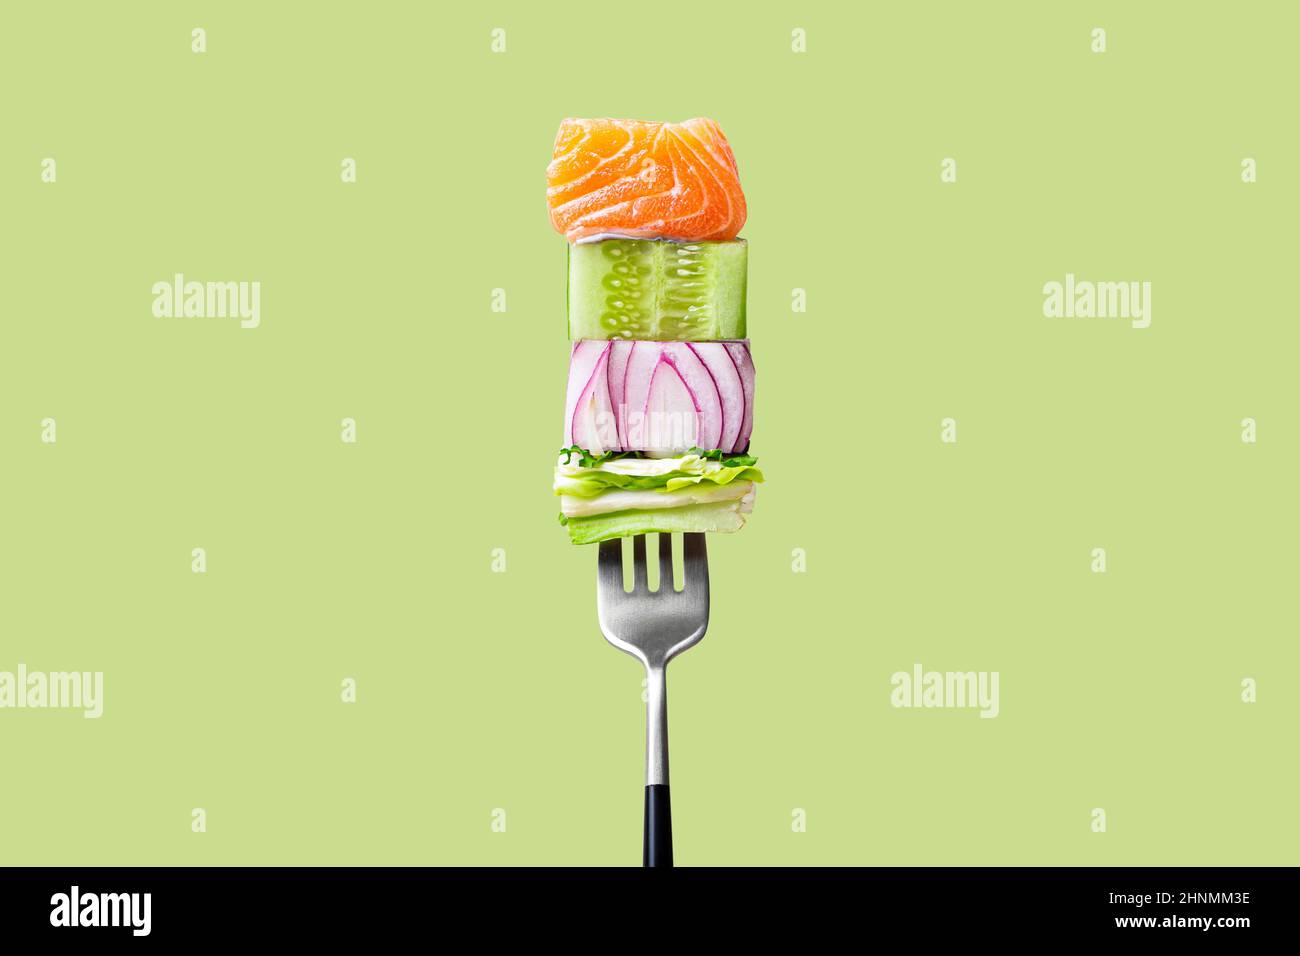 Gros plan de la fourchette avec la nourriture dessus: Délicieux filet de saumon, concombre, oignon, salade sur fond vert Banque D'Images